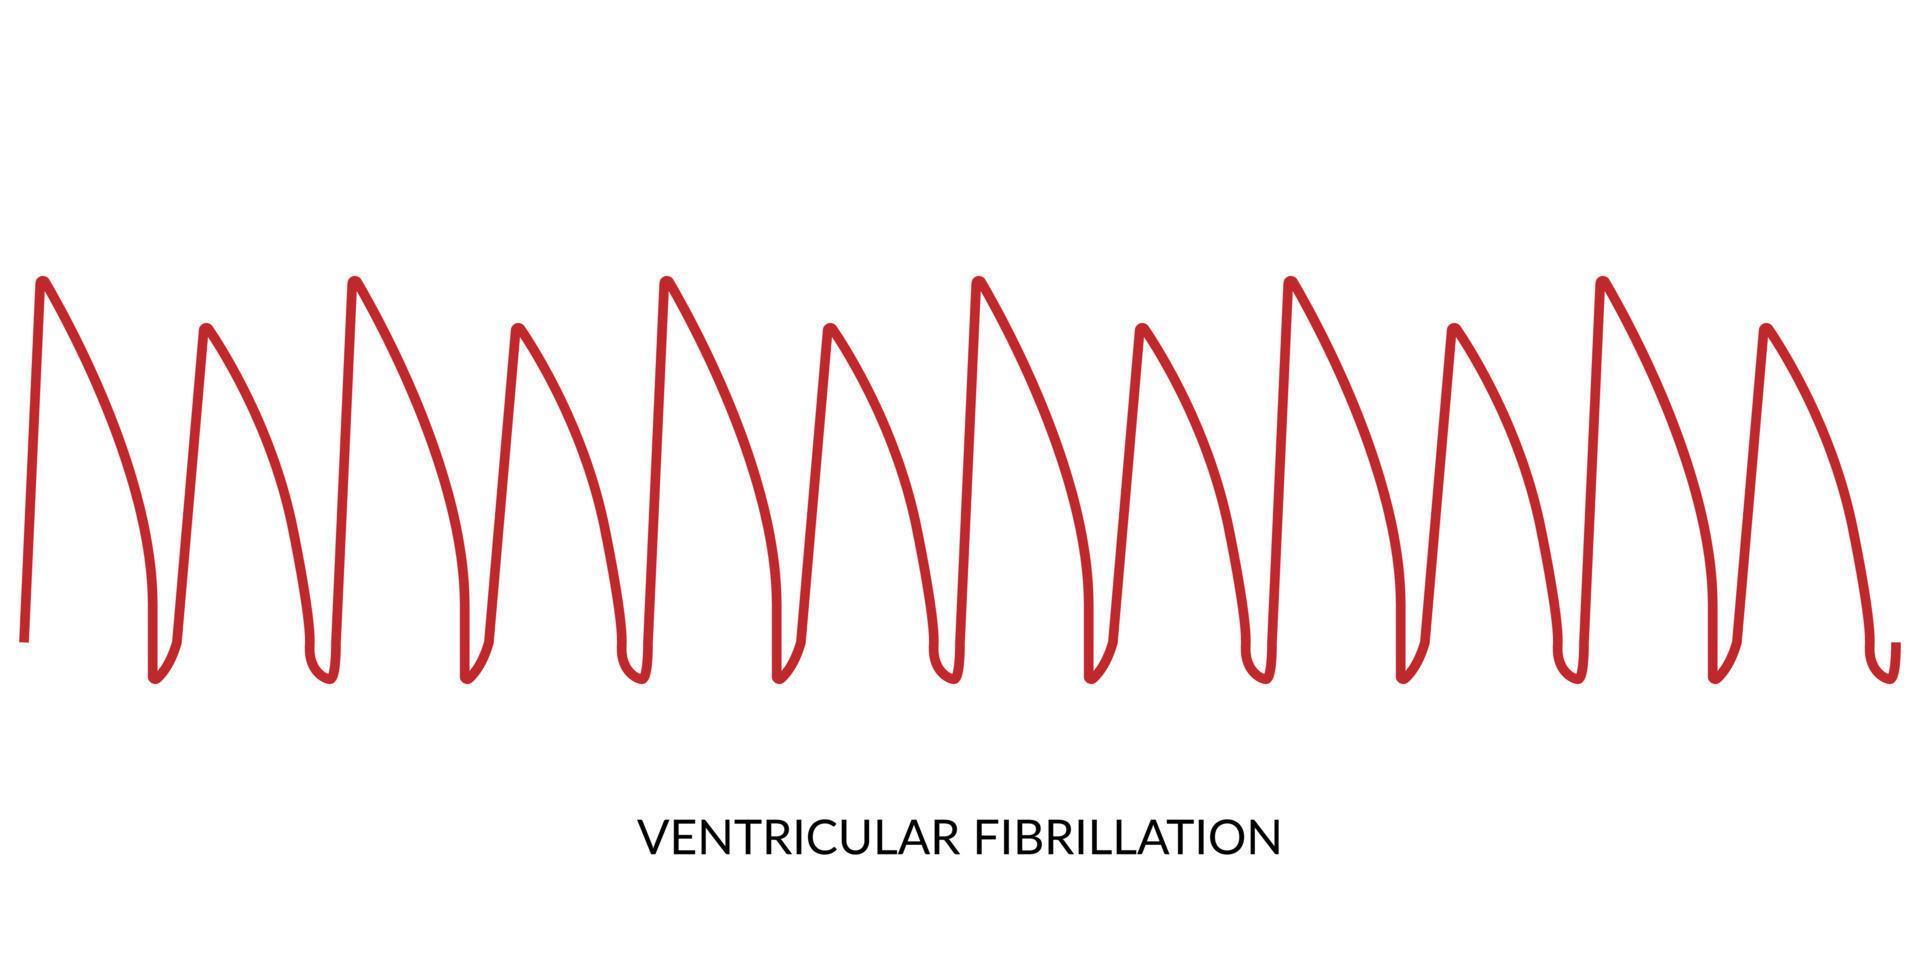 ecg battement de coeur doubler. électrocardiogramme vecteur illustration. ventriculaire fibrillation